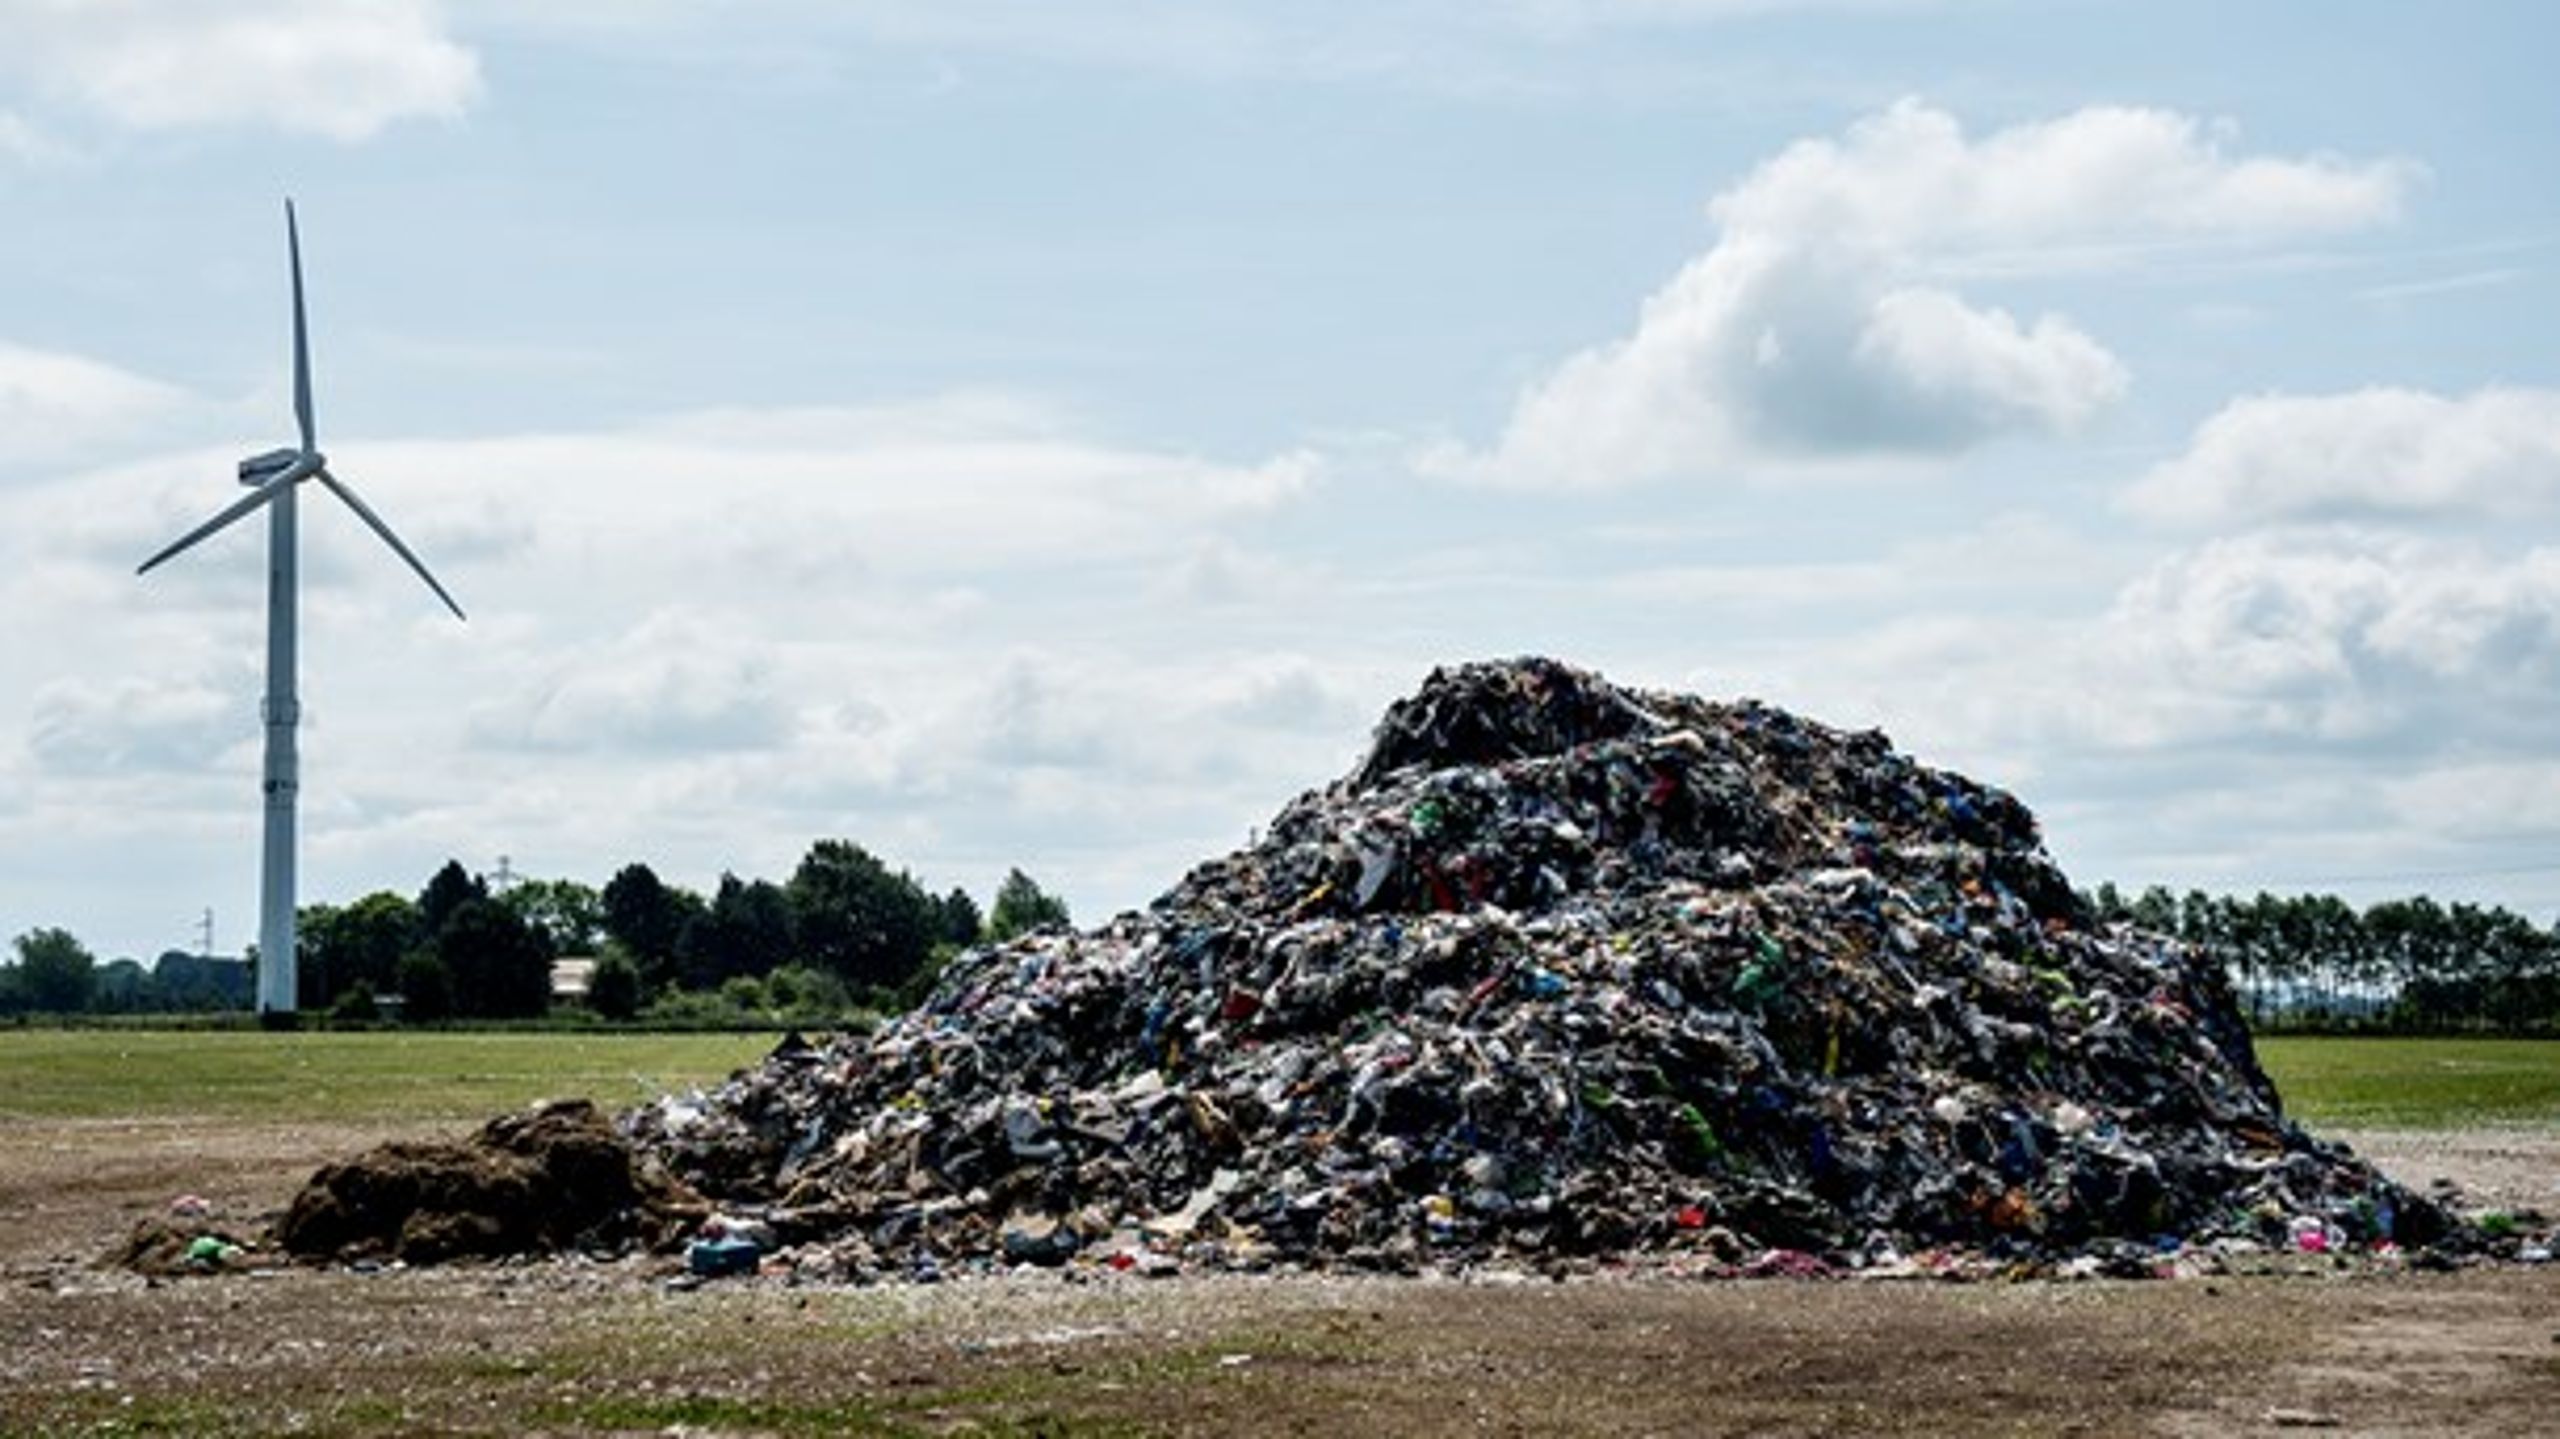 Affaldsenergisektoren har potentiale til at blive CO2-neutral og måske endda CO2-positiv, vurderer Dansk Affaldsforening.